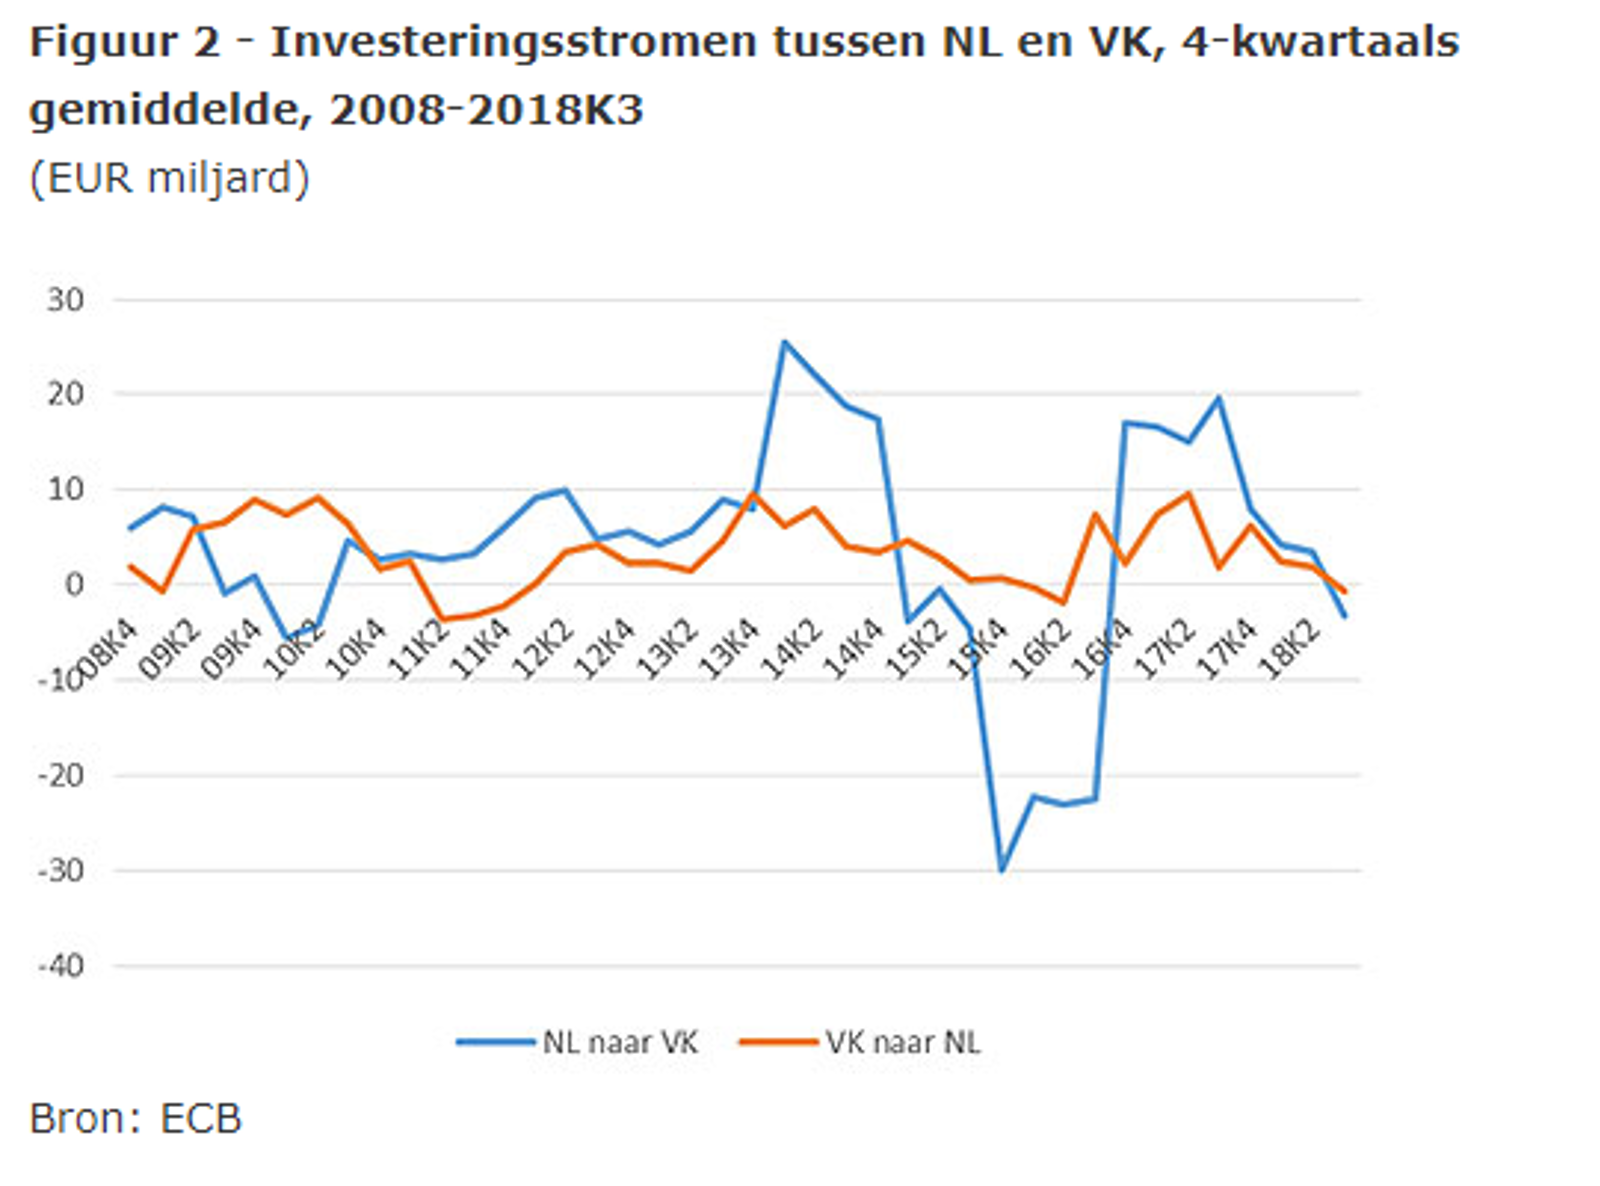 Investeringsstromen tussen NL en VK, 4-kwartaals gemiddelde, 2008-2018K3